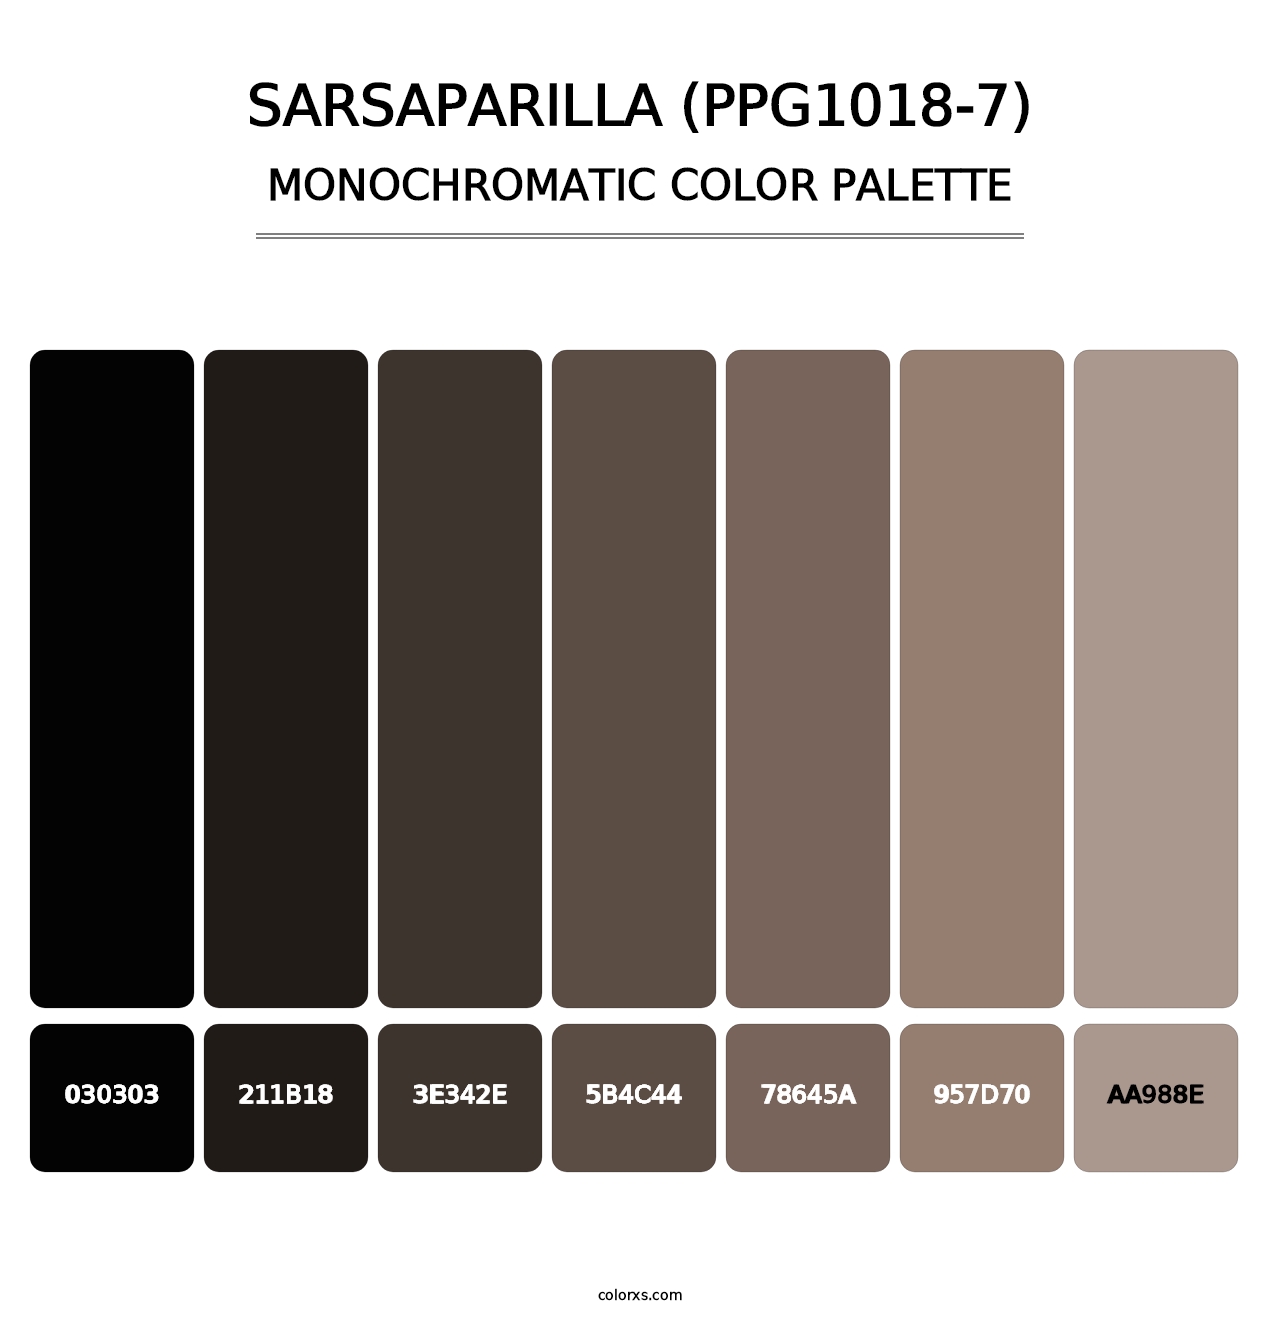 Sarsaparilla (PPG1018-7) - Monochromatic Color Palette